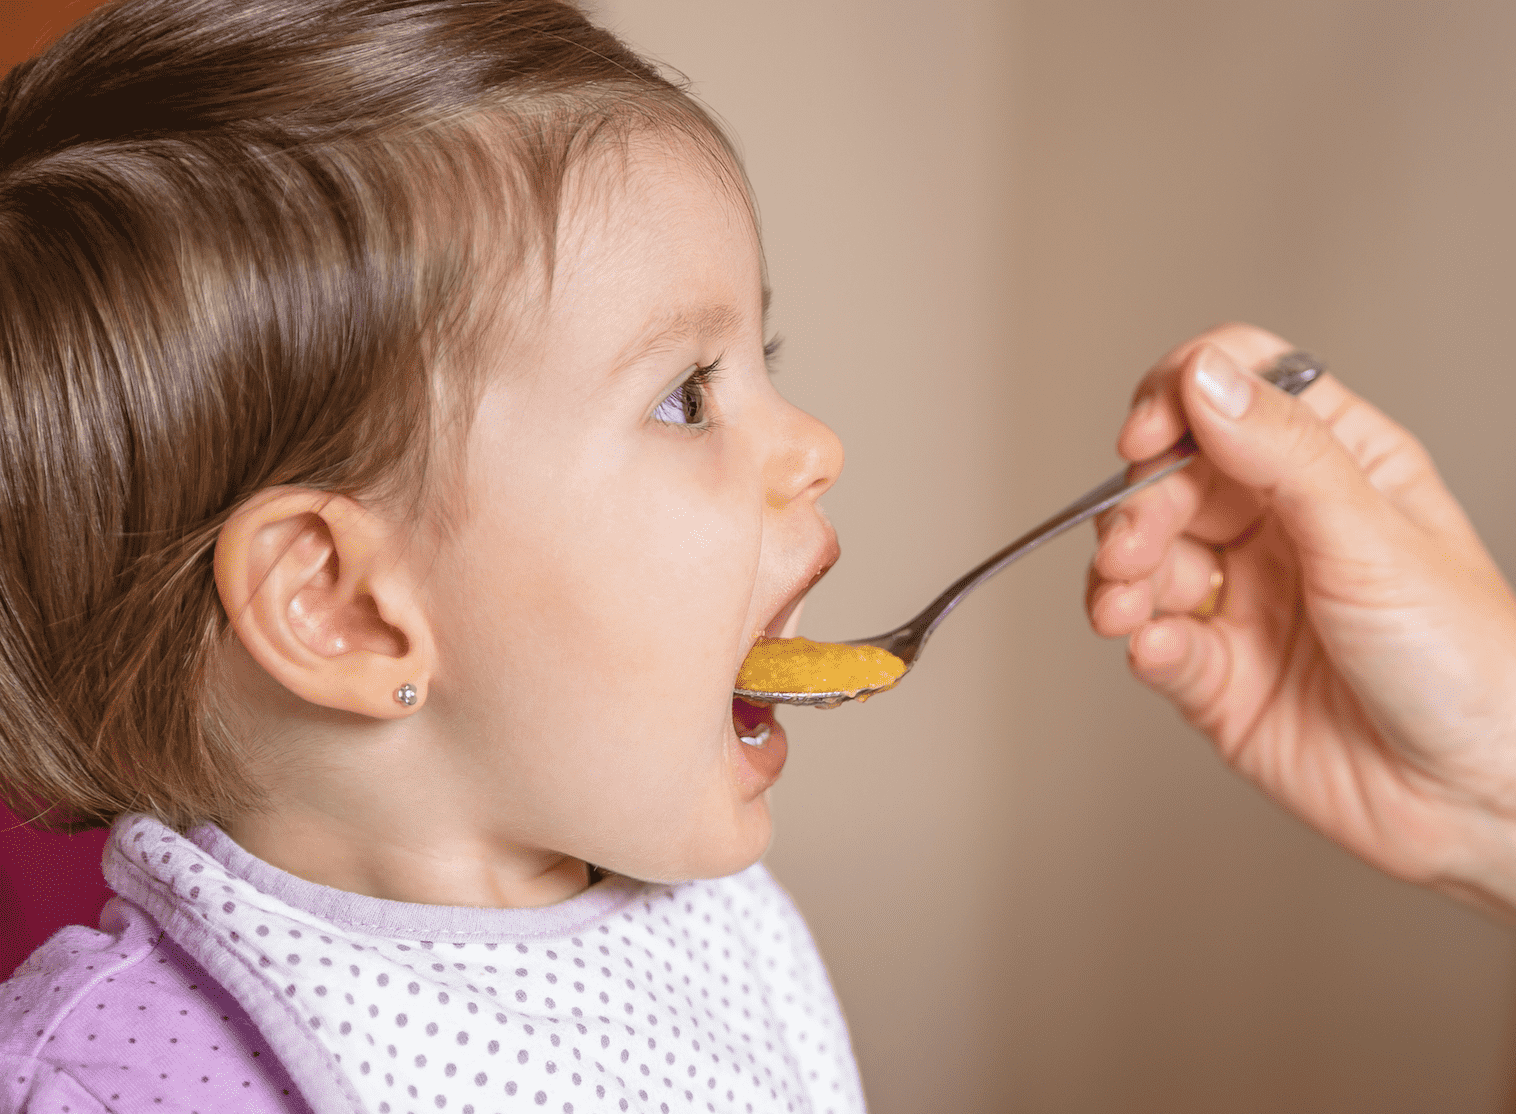 بعد أن ثبت تلوث طعام الاطفال الجاهز بسموم خطيرة.. الولايات المتحدة تهدف لتشديد مراقبتة